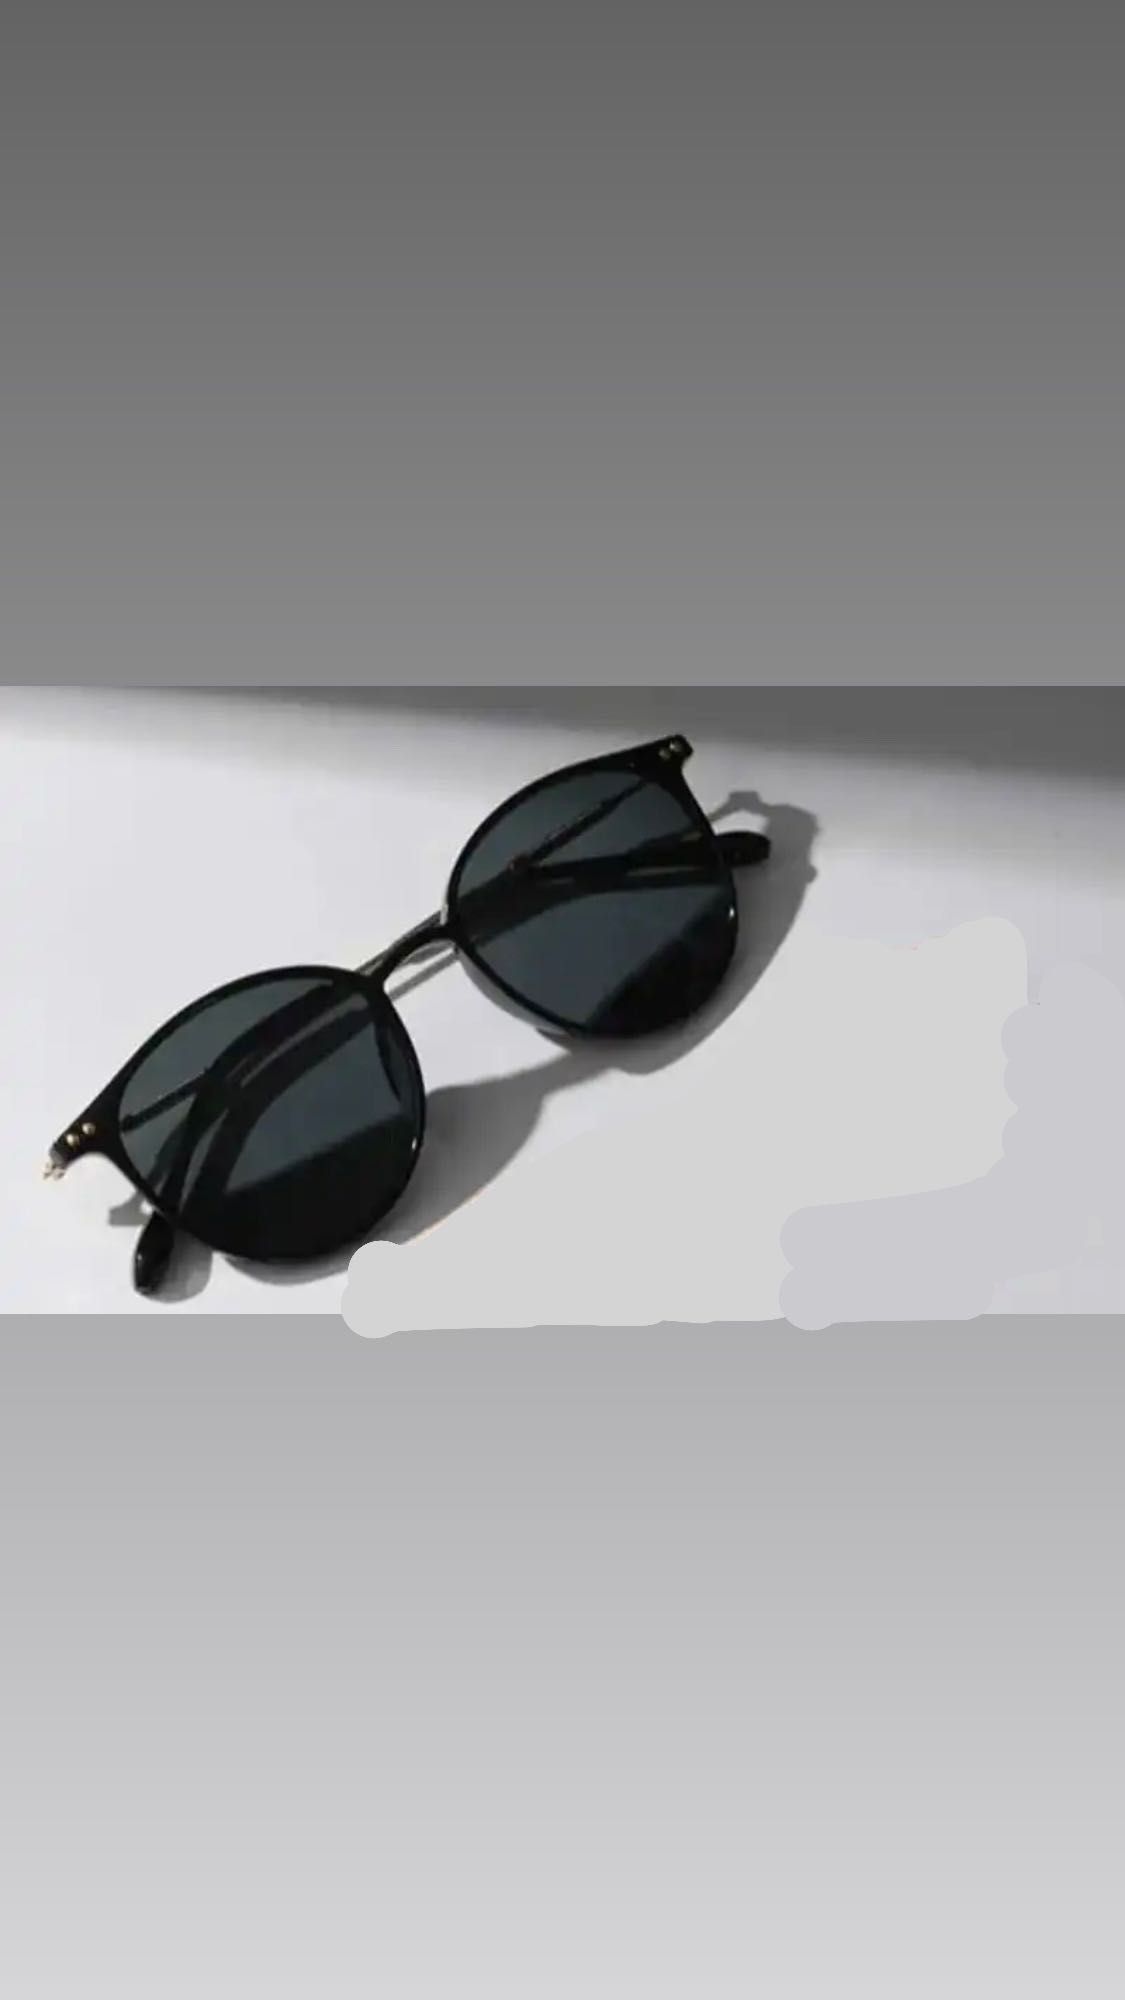 Okulary  przeciwsłoneczne damskie kocie oko czarne nowe stylowe